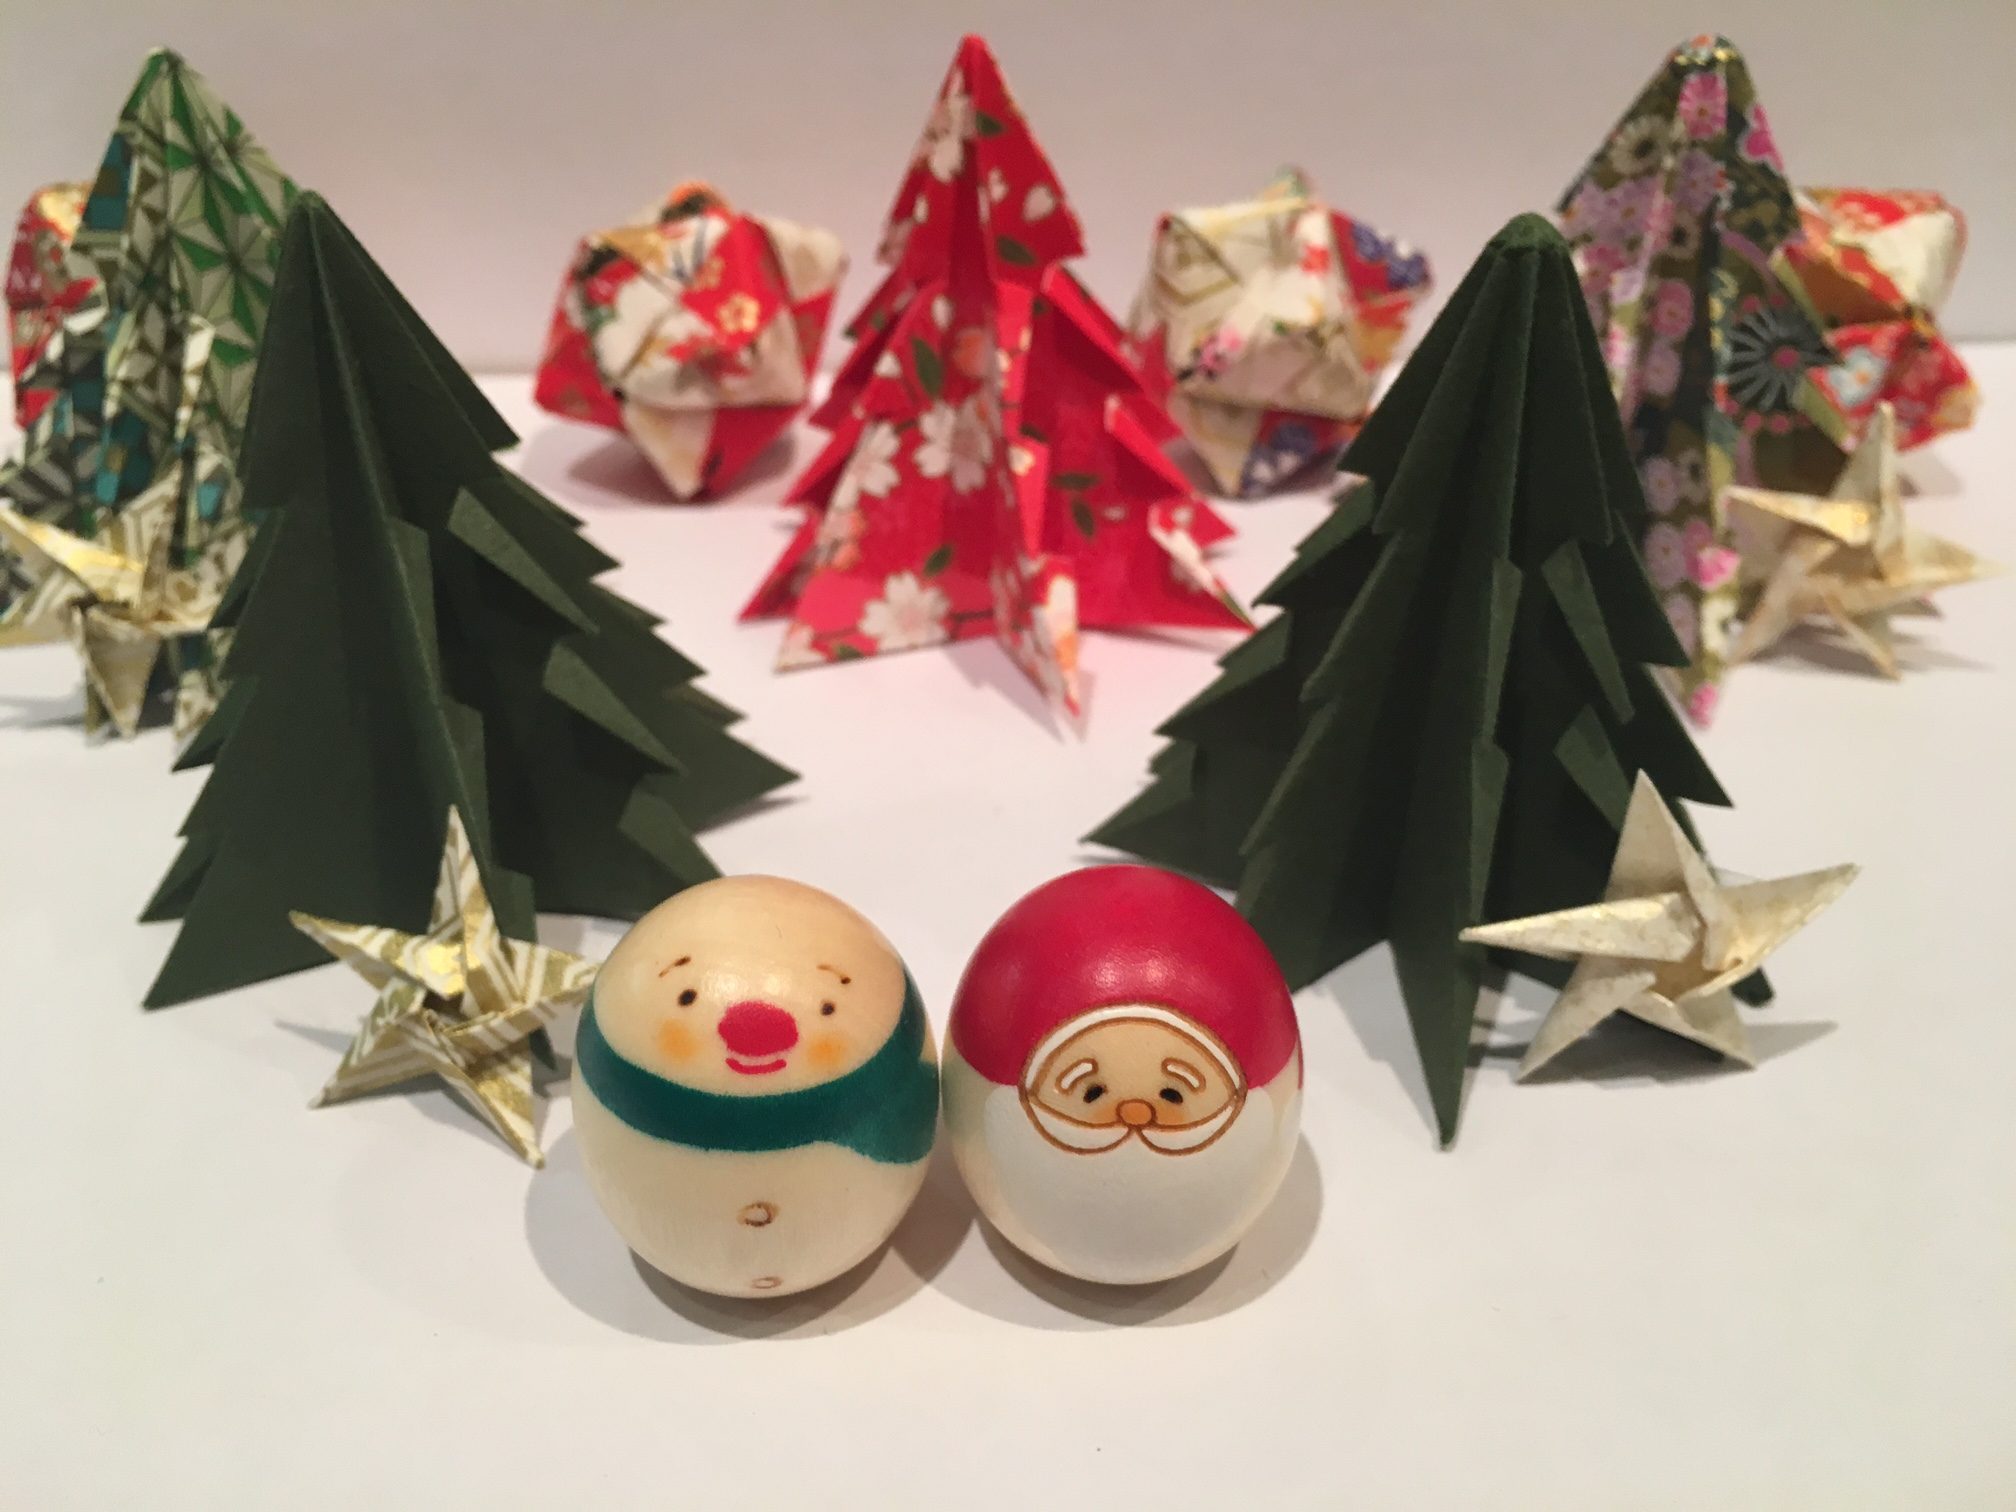 Origami Crane Ornament Christmas Christmas Diy How To Make Origami Christmas Decorations